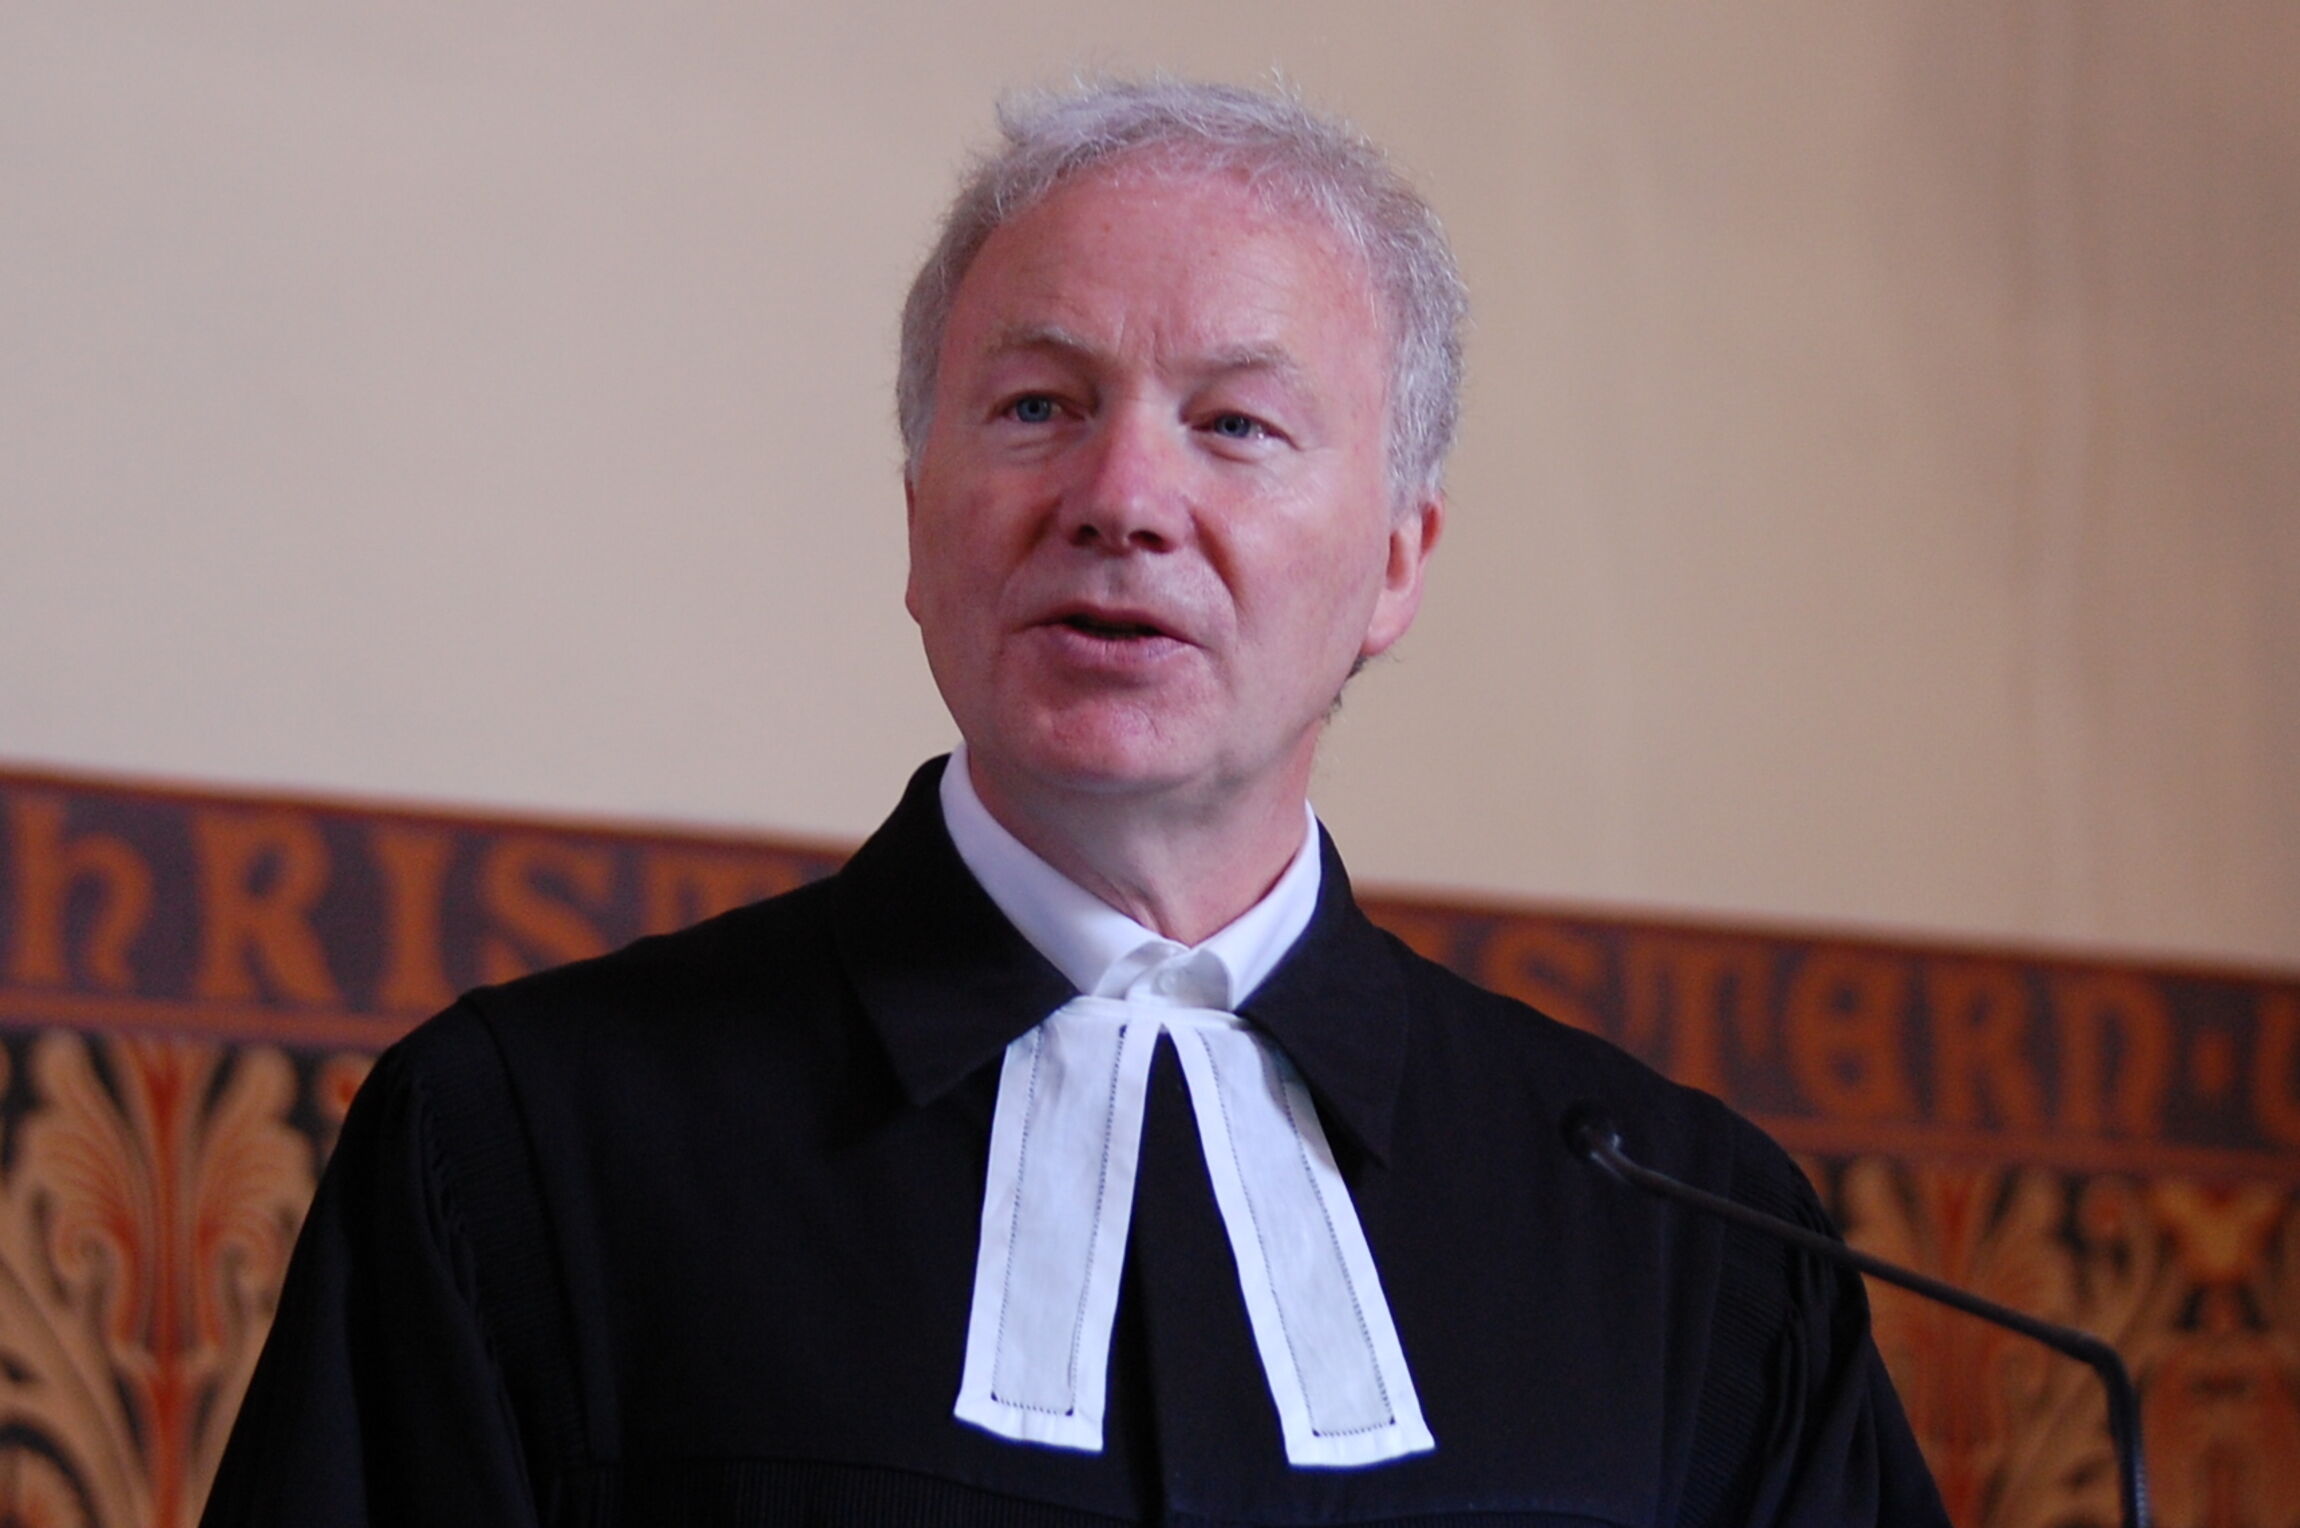 Pastor Dr. Ulf Zastrow